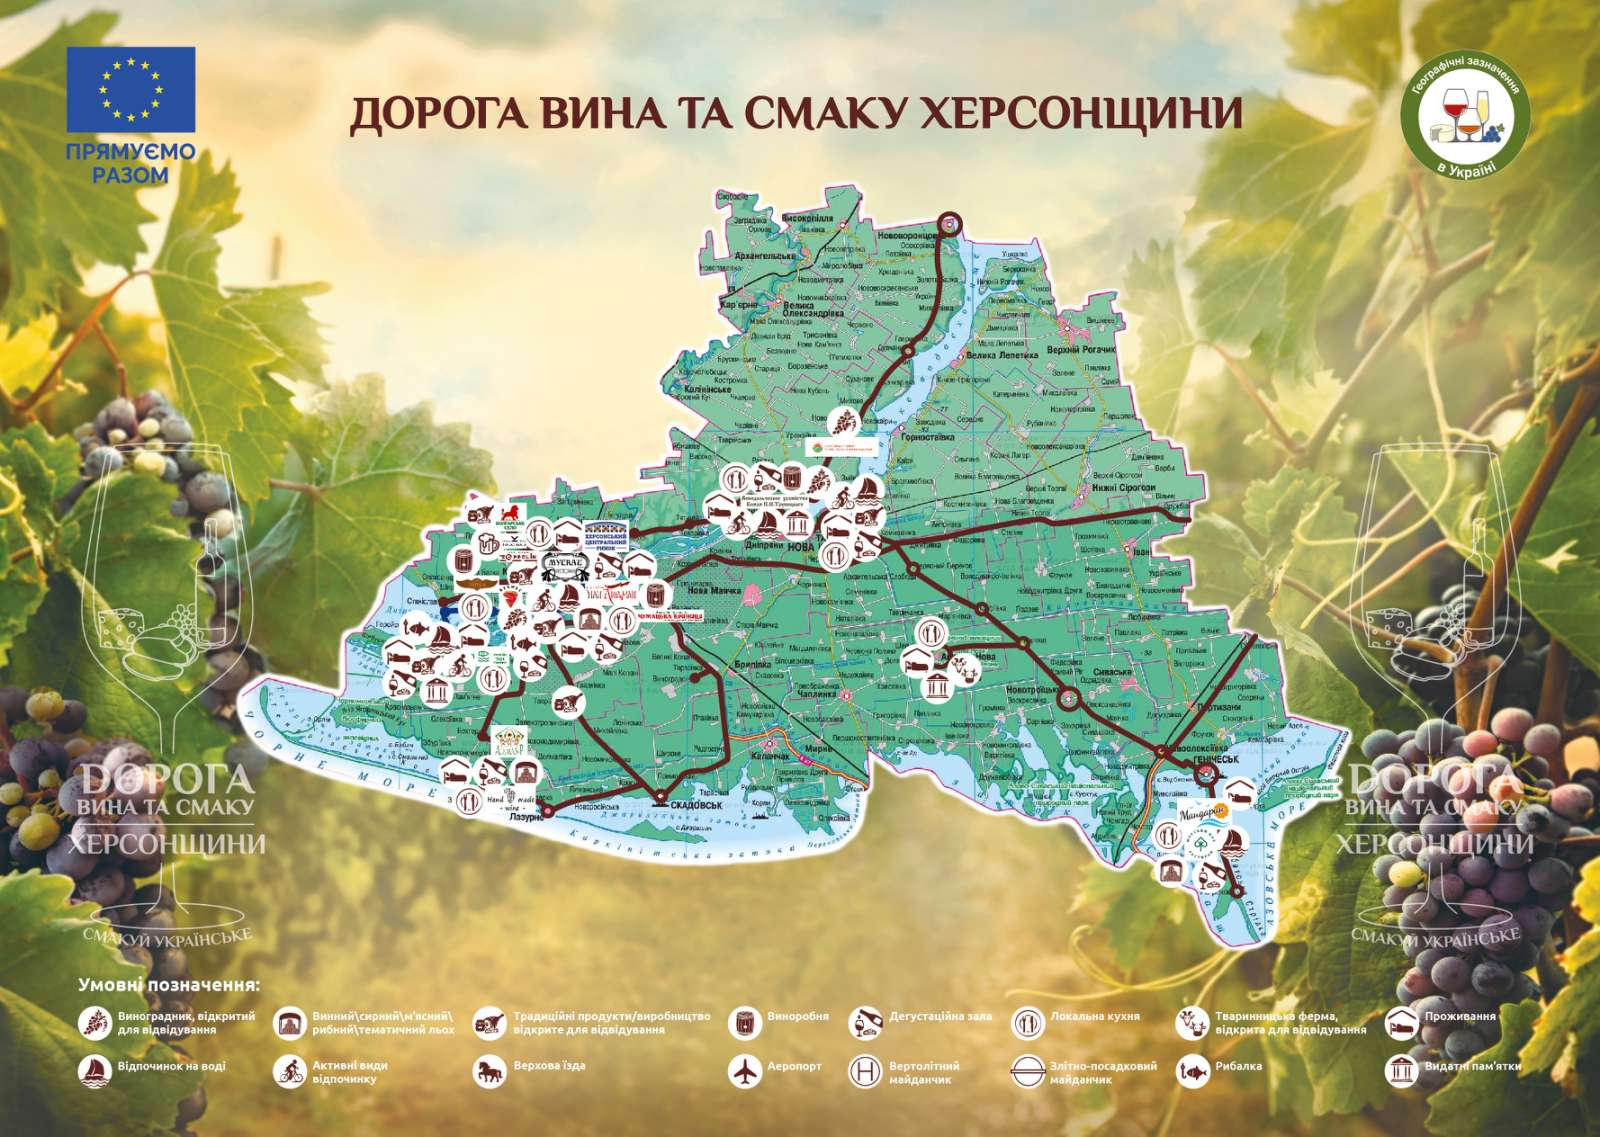 Нашу «Дорогу» представлено на Всеукраїнському форумі!